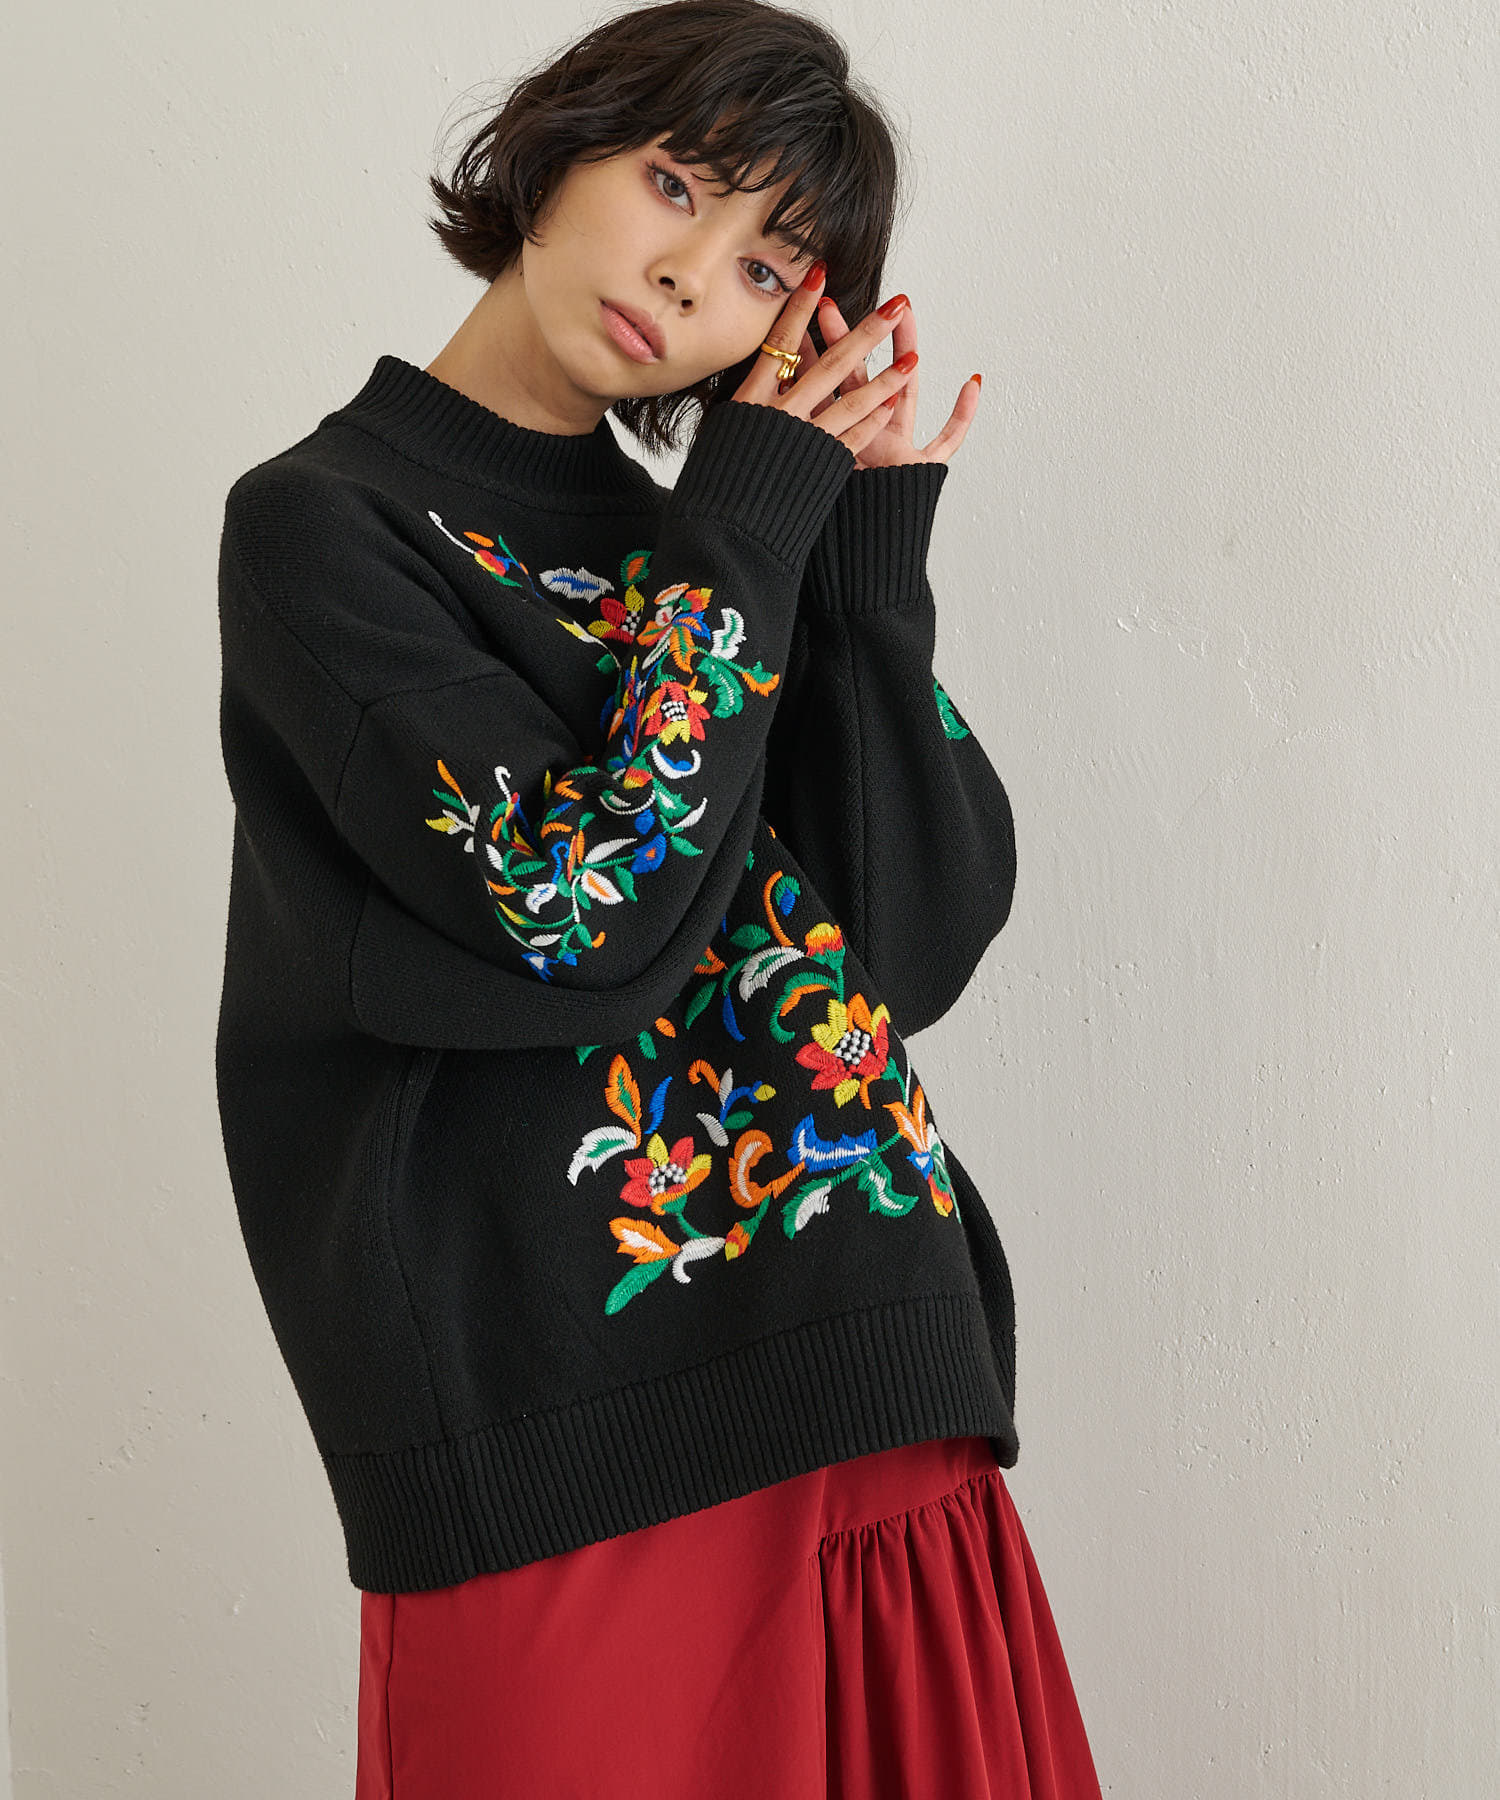 yori 新品5月下旬発売予定 コットン刺繍カラーニットファッション